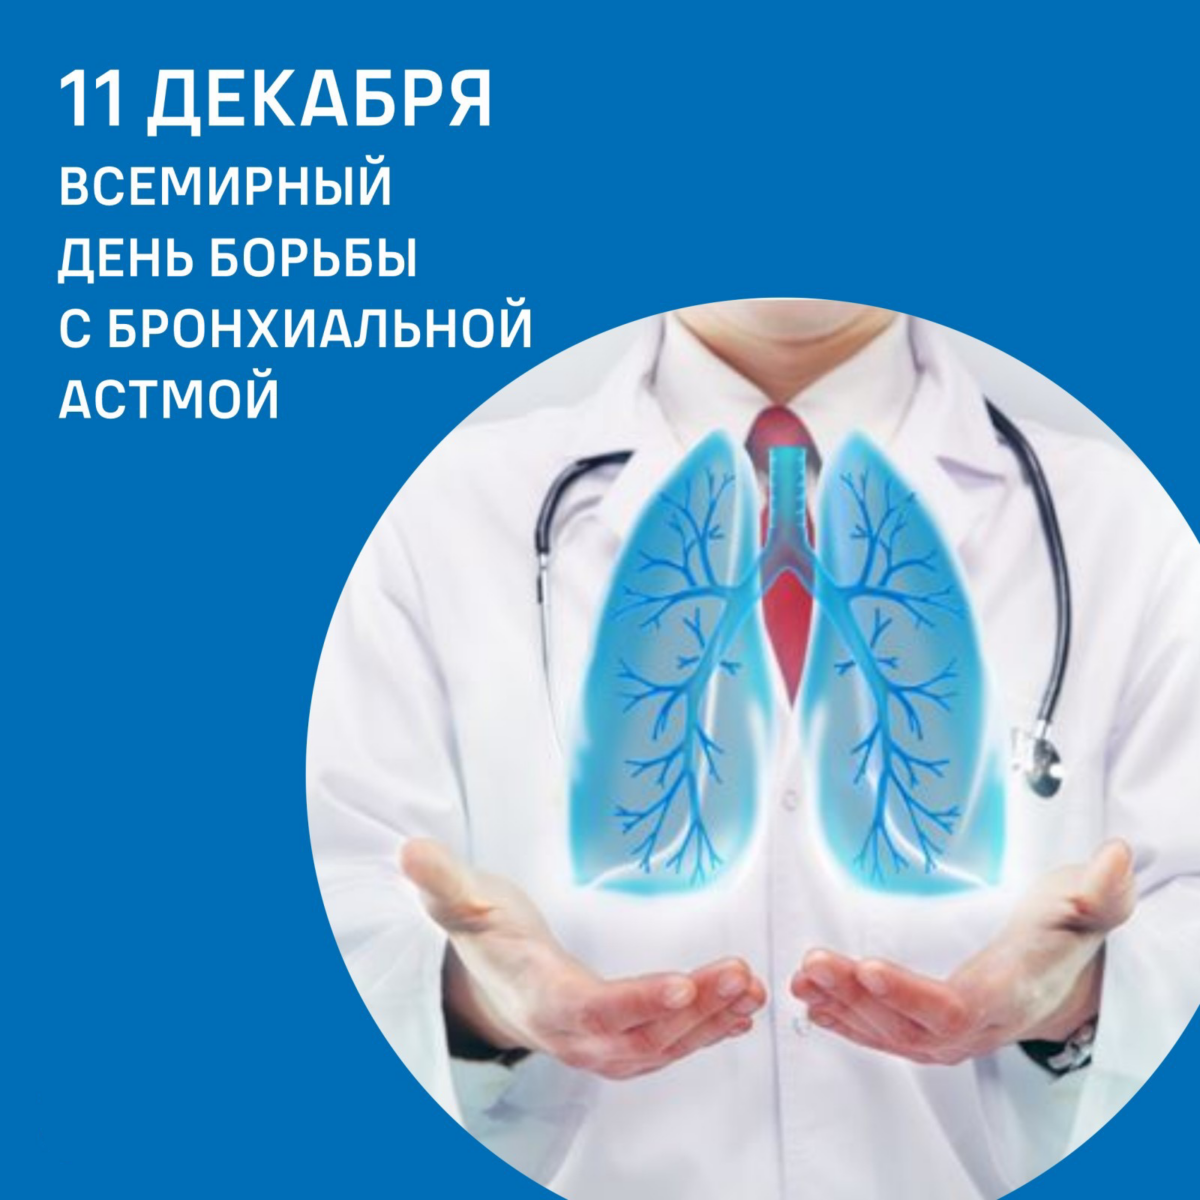 Всемирный день борьбы с бронхиальной астмой — 11 декабря